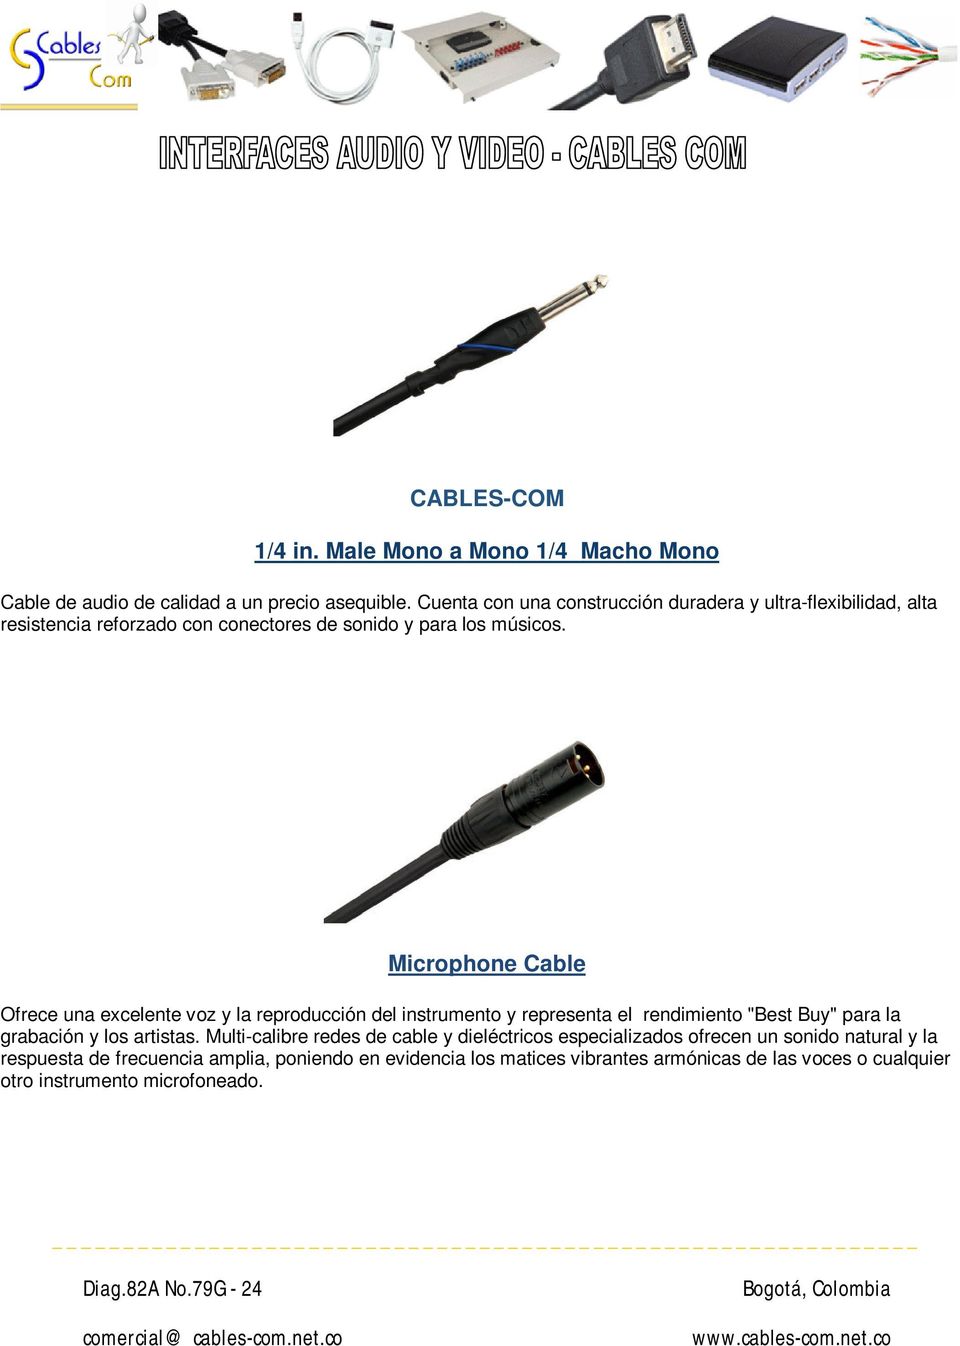 Microphone Cable Ofrece una excelente voz y la reproducción del instrumento y representa el rendimiento "Best Buy" para la grabación y los artistas.